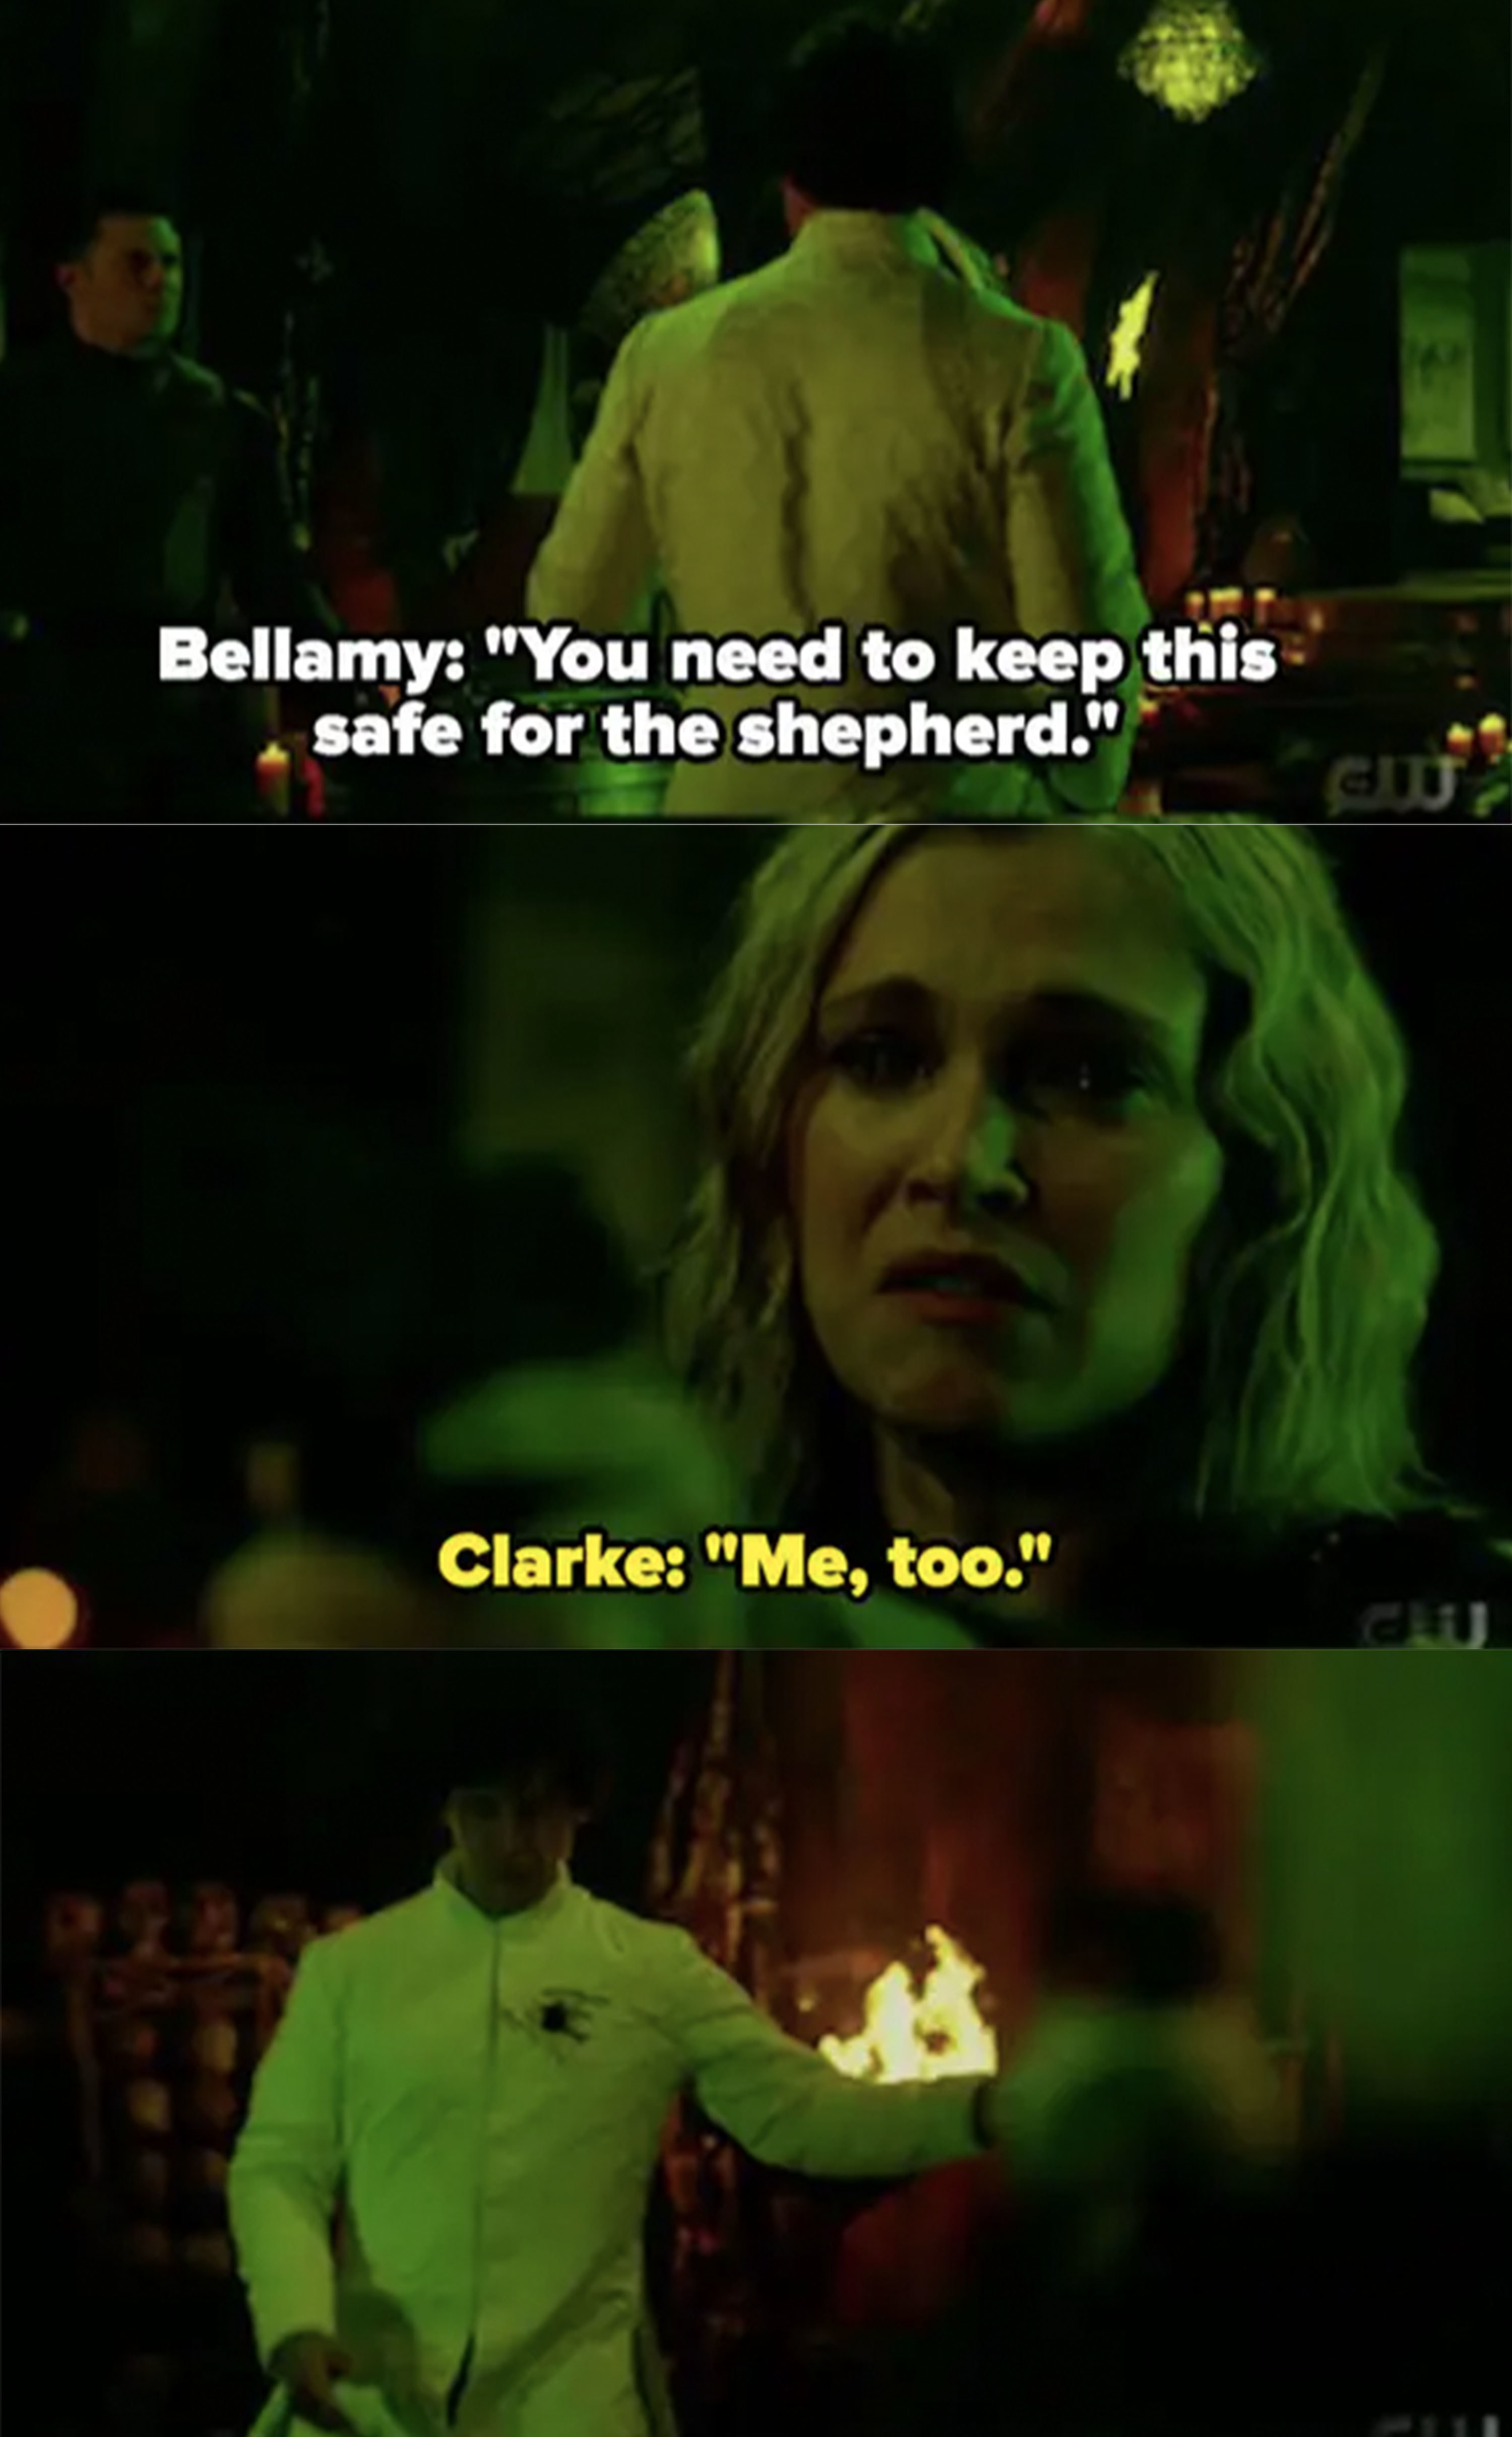 Clarke shoots Bellamy